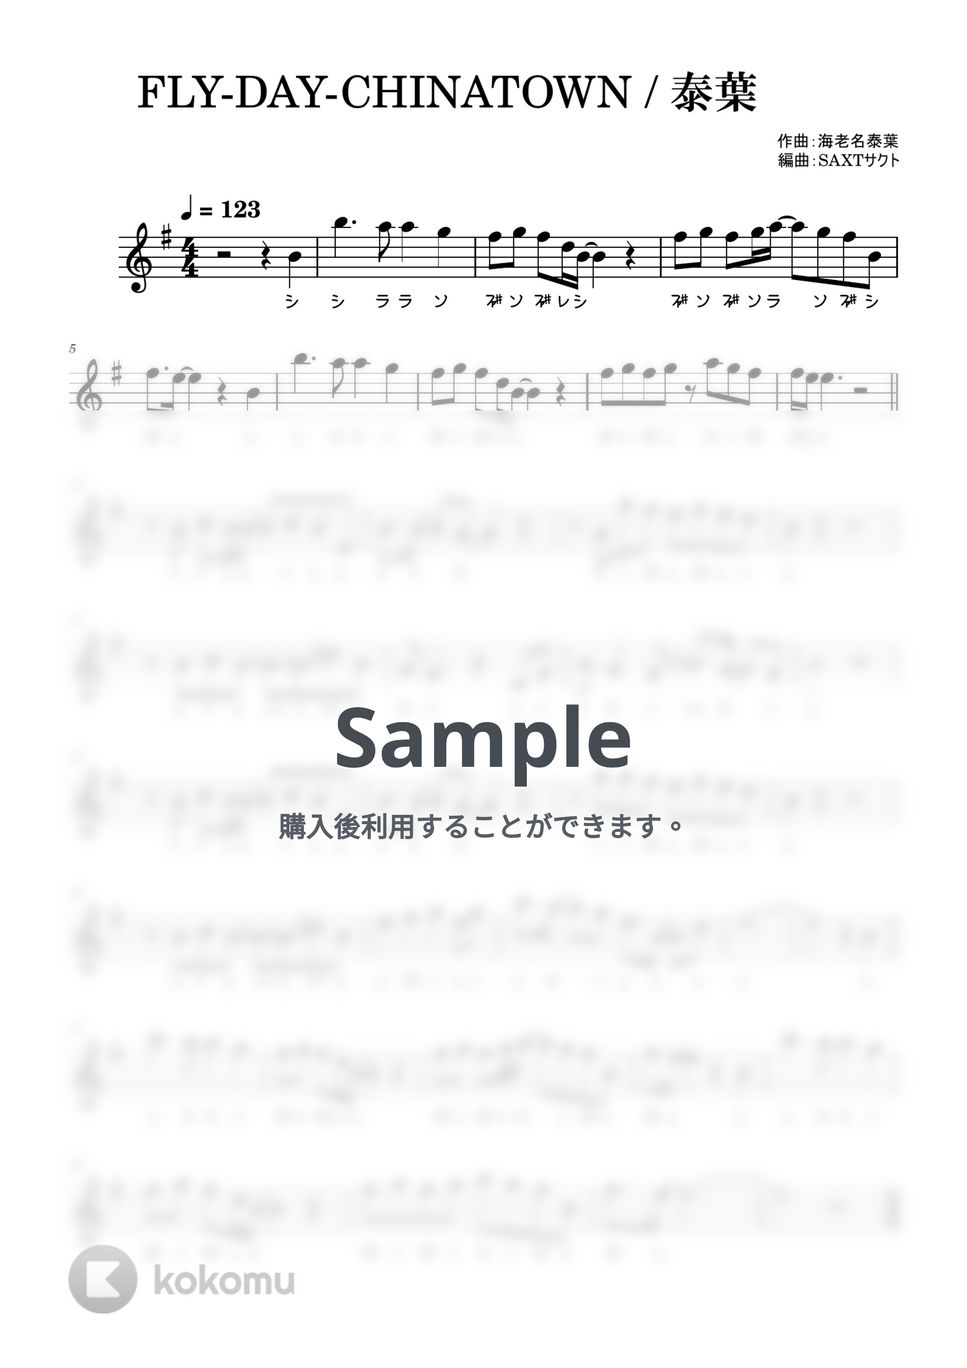 泰葉 - FLY-DAY-CHINATOWN (めちゃラク譜・ドレミあり) by SAXT